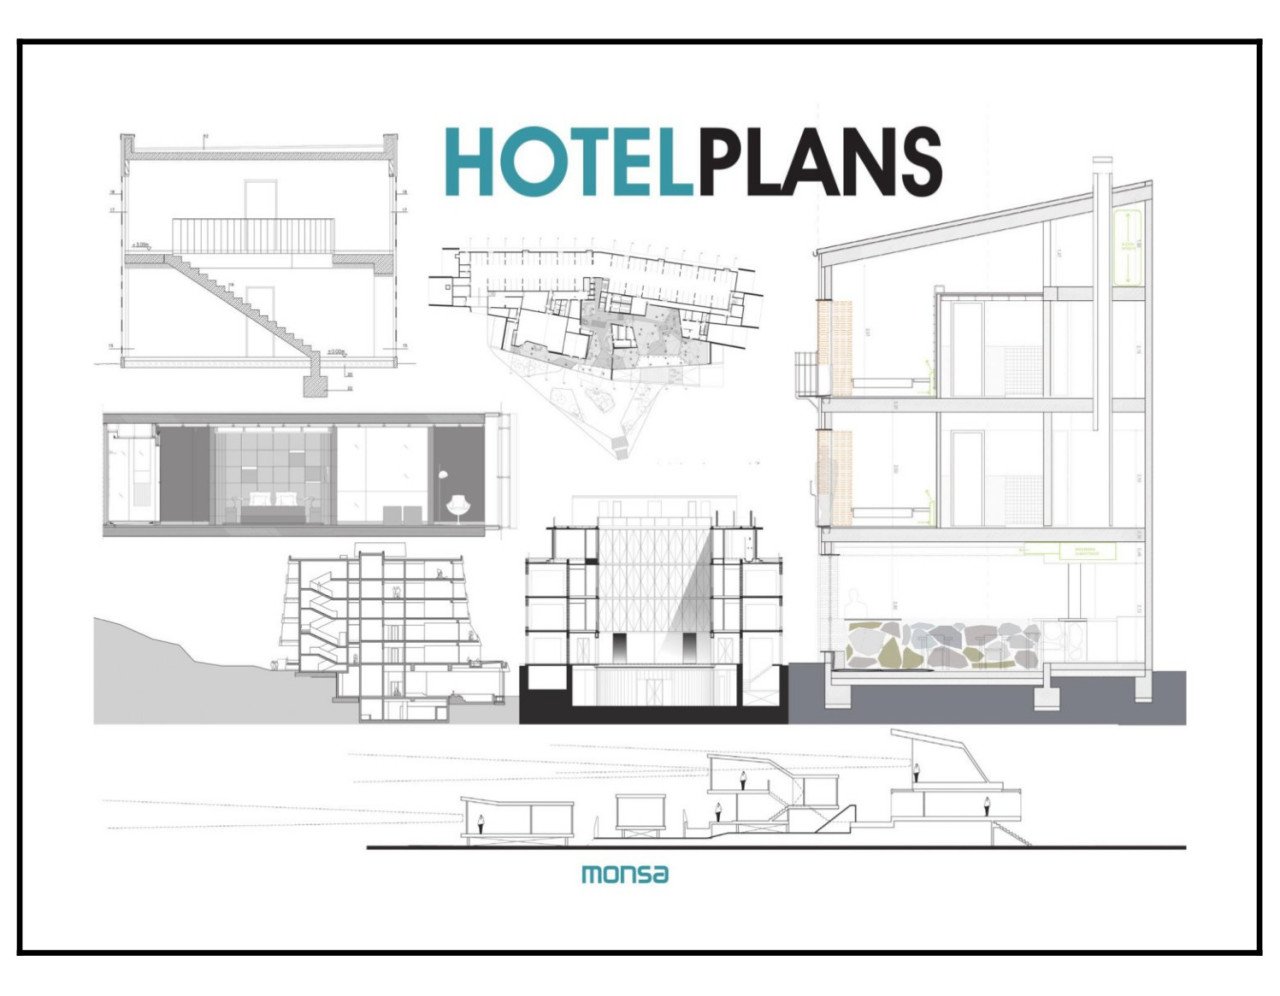 HOTEL PLANS (Planlarıyla Hotel Tasarımları)